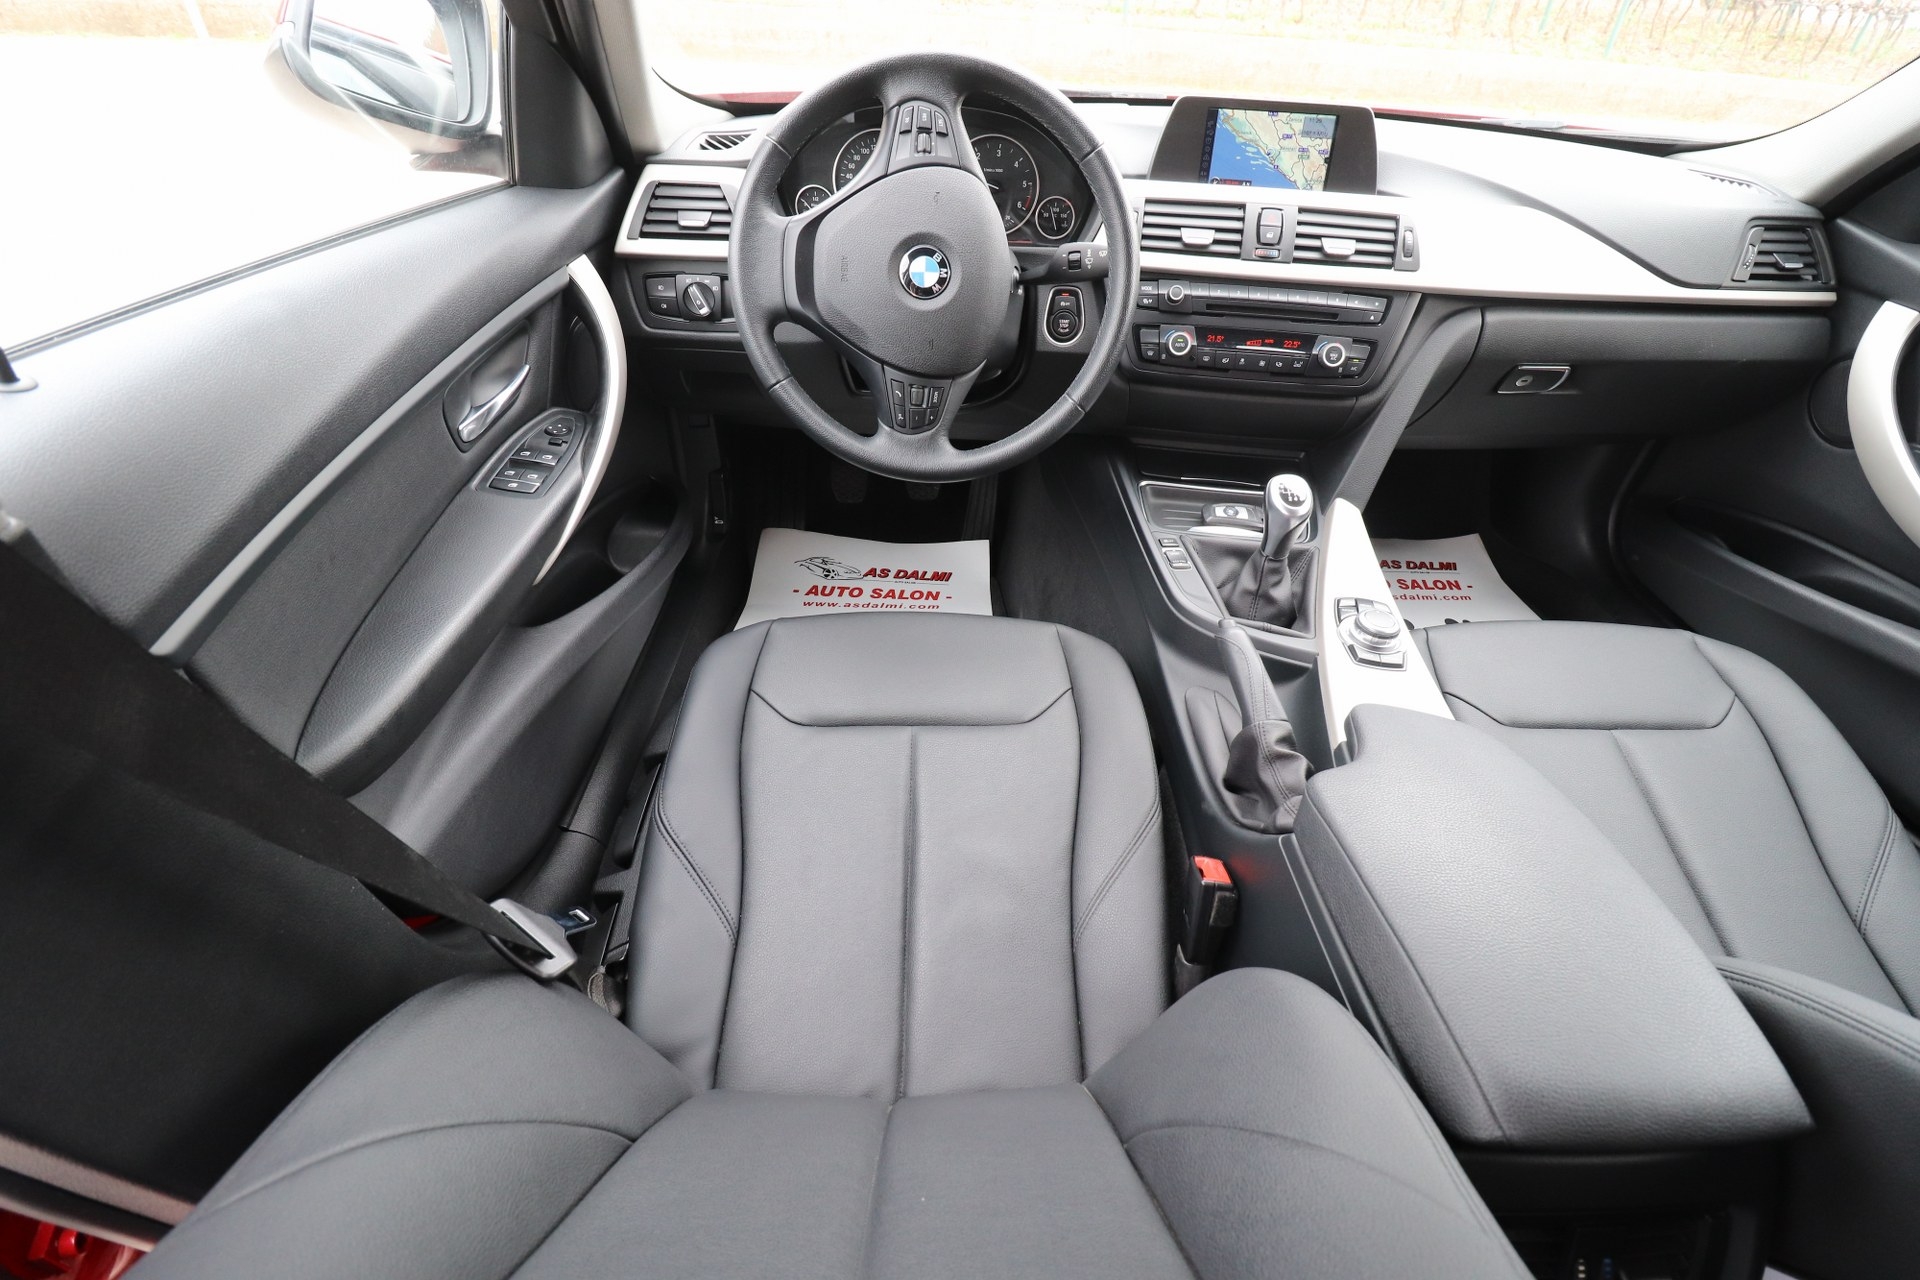 BMW 318 D F30 INDIVIDUAL Sportpaket Plus Edition Exclusive Navigacija Parktronic Max-VOLL Bi-Xenon+LED 100 kW-136 KS New Modell 2015